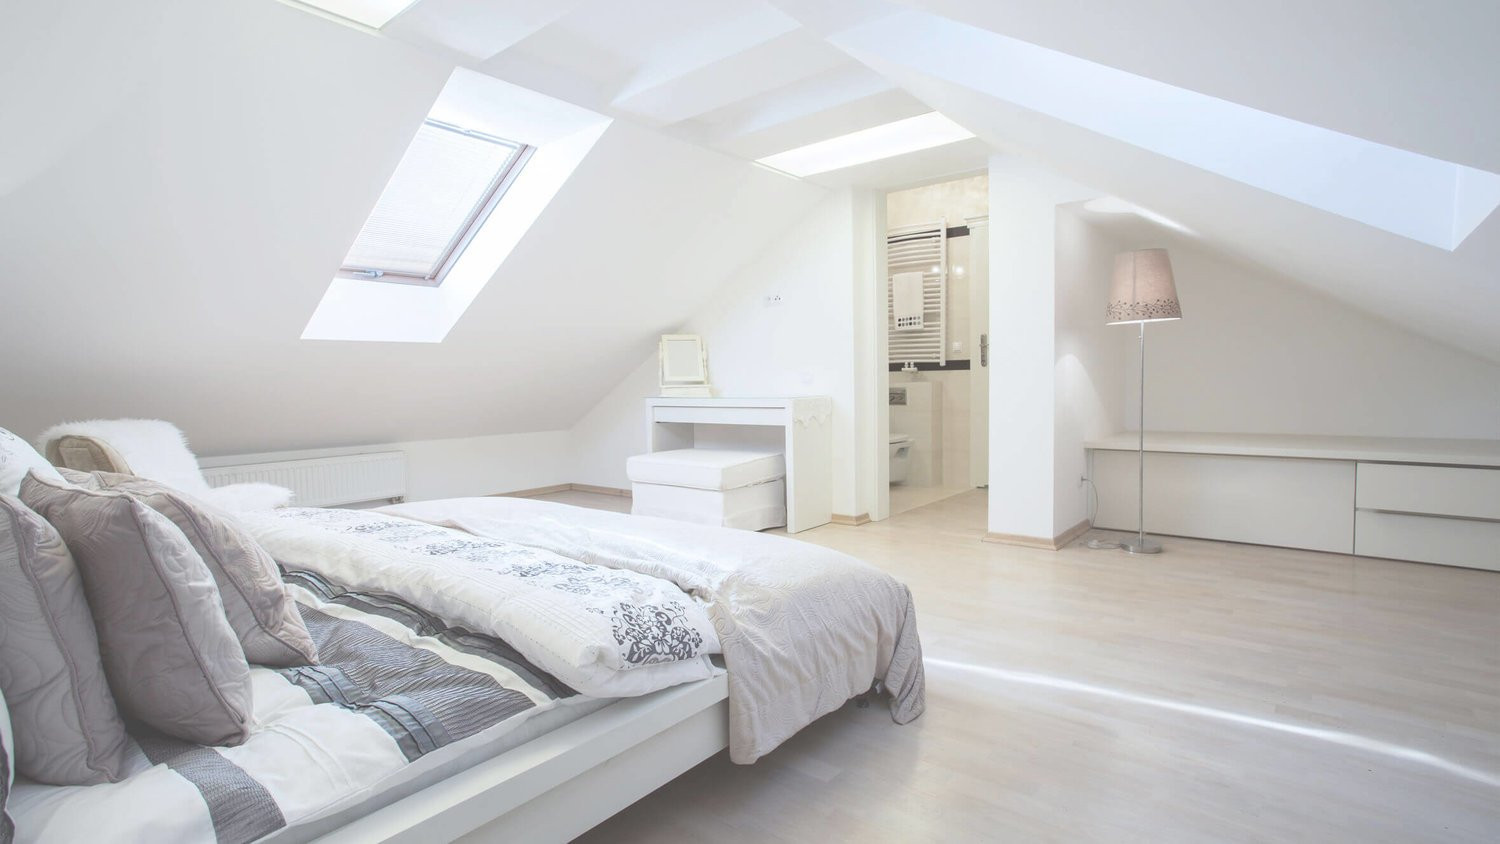 Loft Master Bedroom
 Loft Conversion into Master Bedroom with En Suite